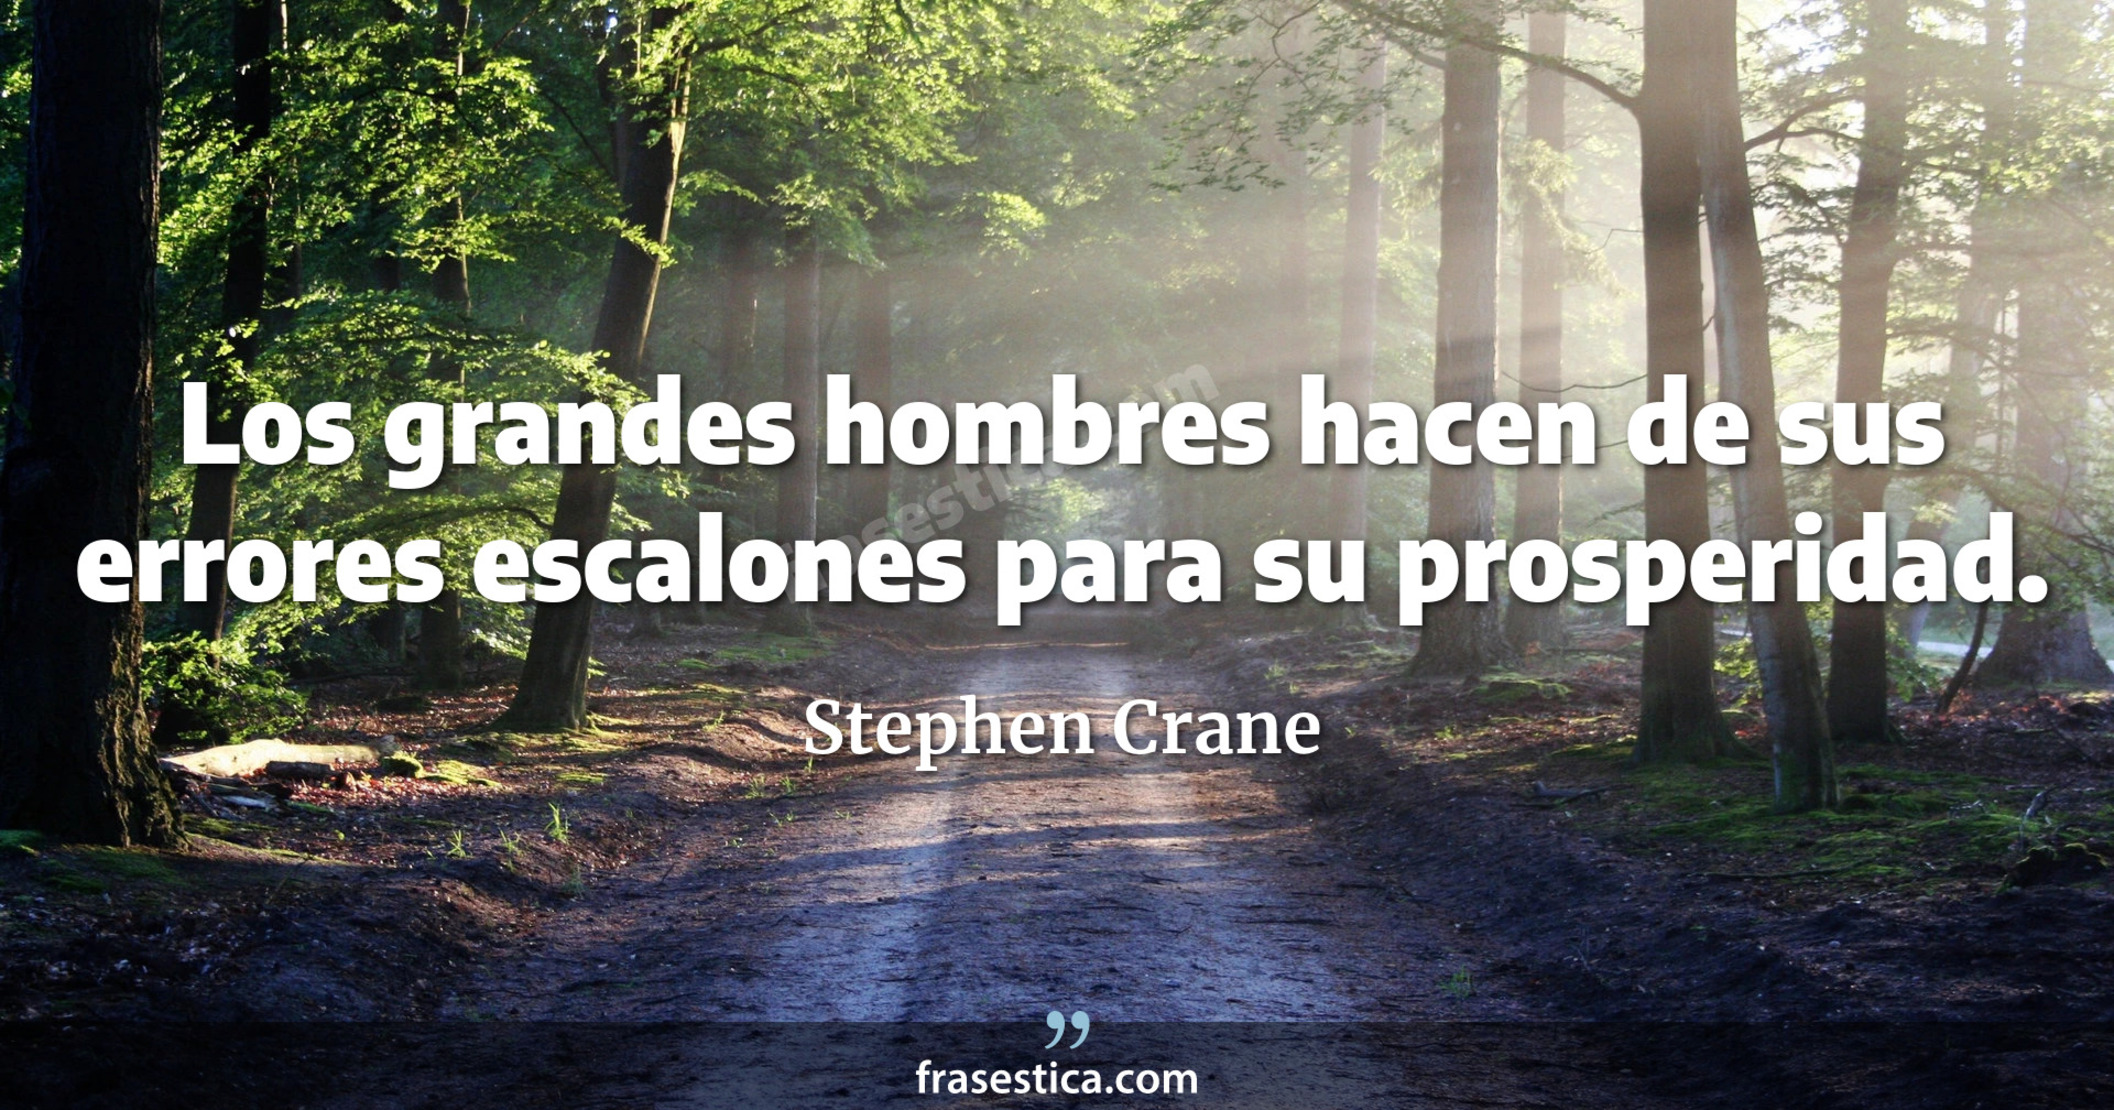 Los grandes hombres hacen de sus errores escalones para su prosperidad. - Stephen Crane